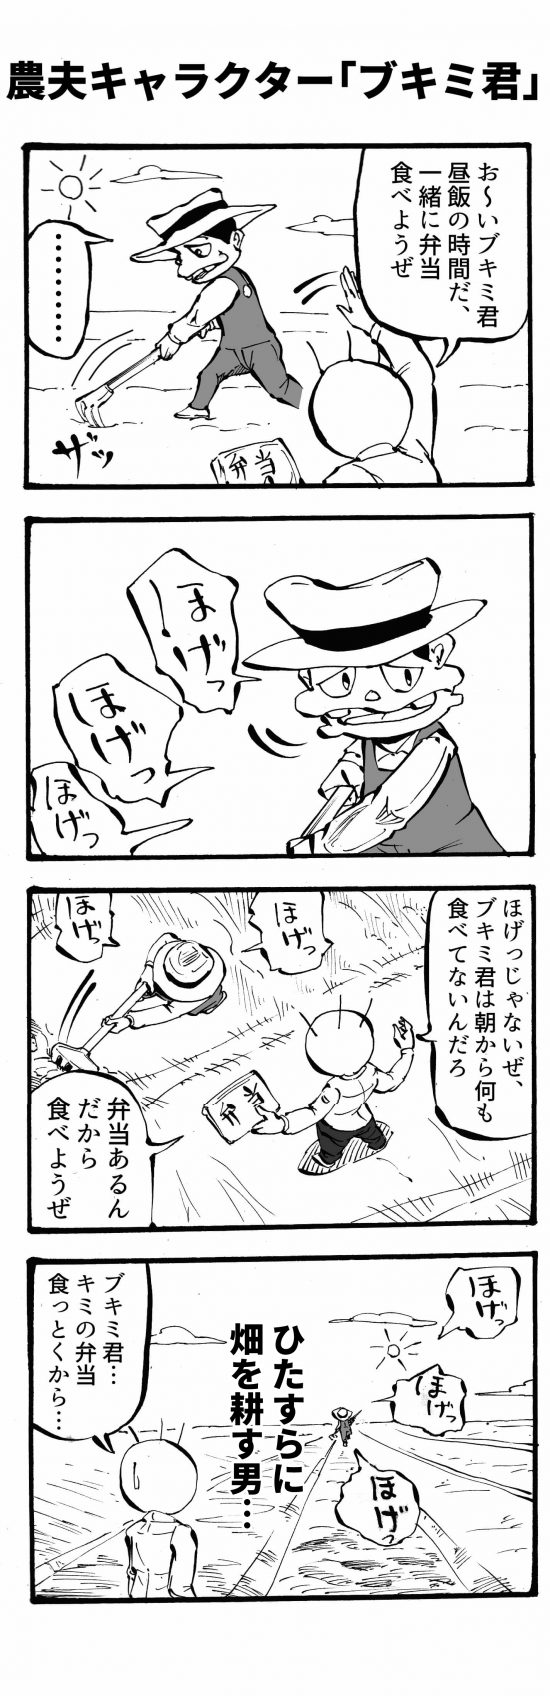 農夫キャラクター「ブキミ君」四コマ漫画